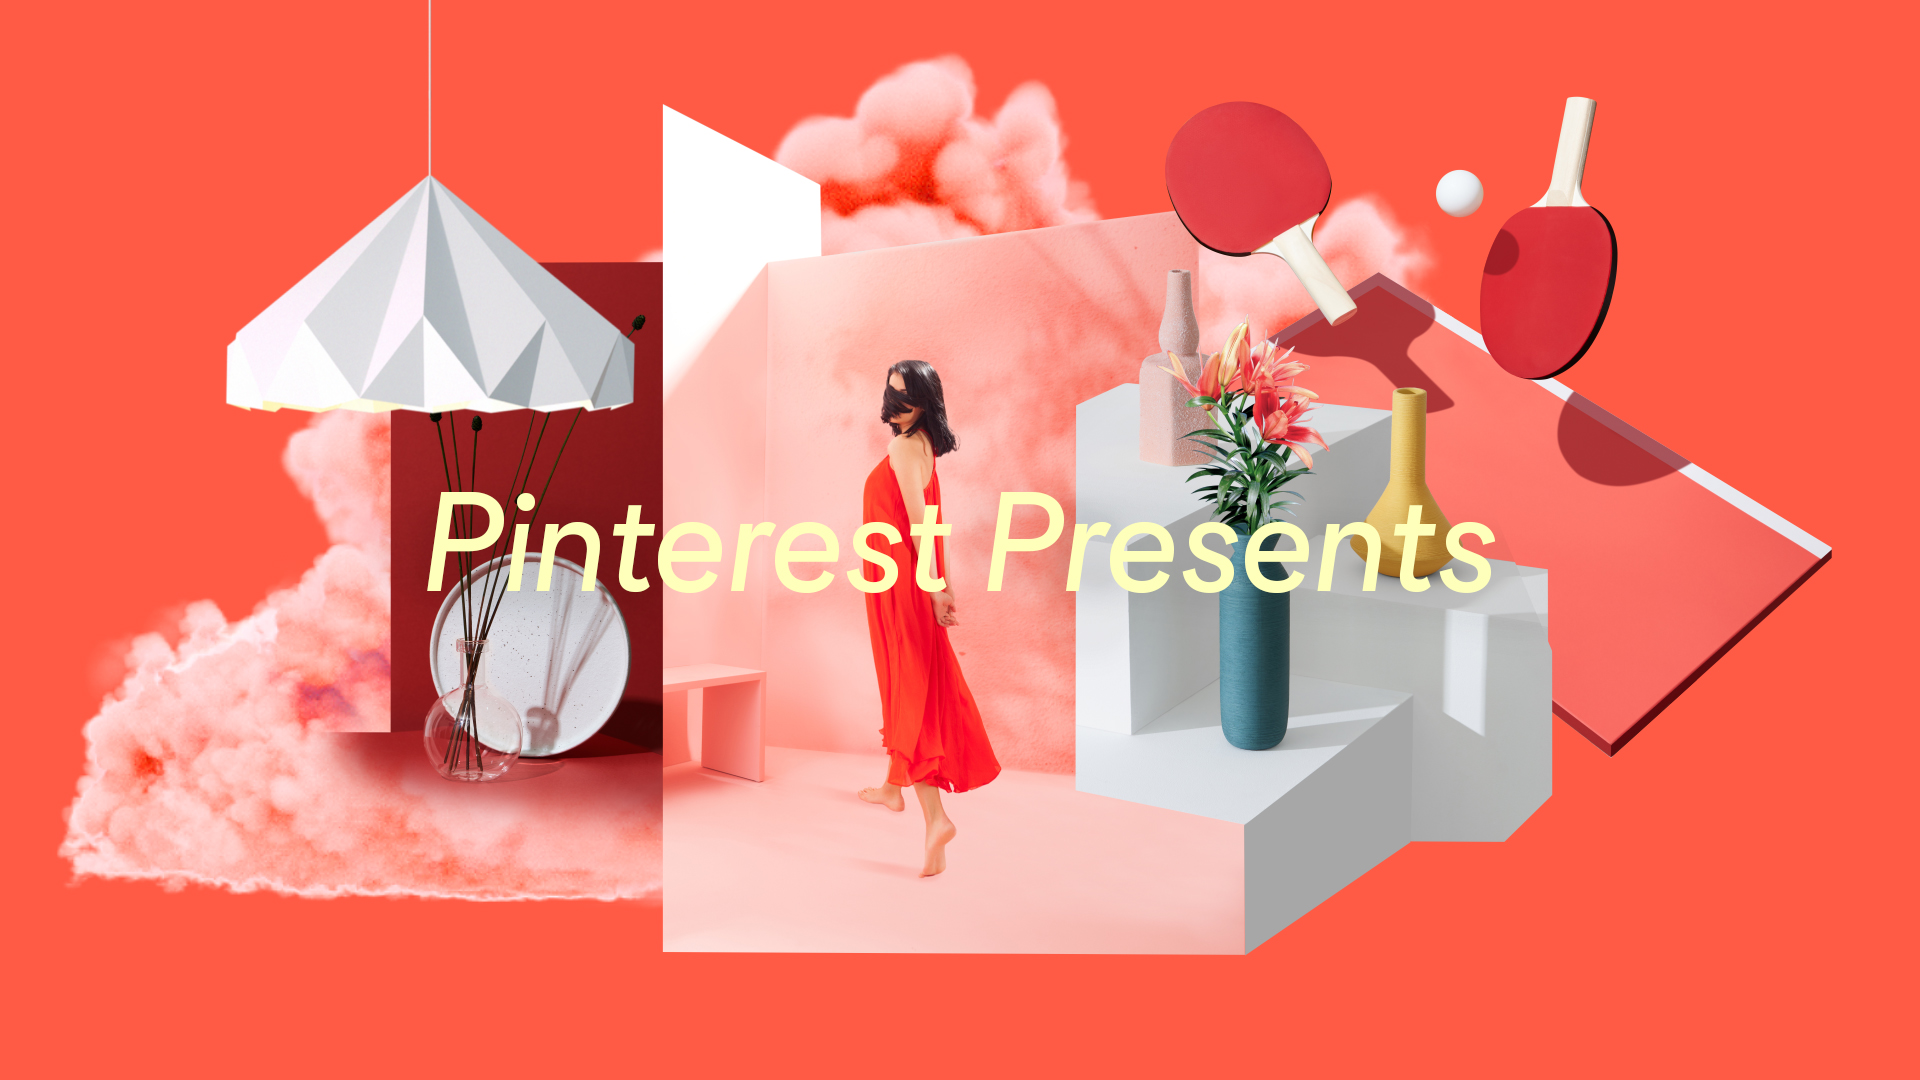 Pinterest veranstaltet ersten globalen Werbe-Summit Pinterest Presents